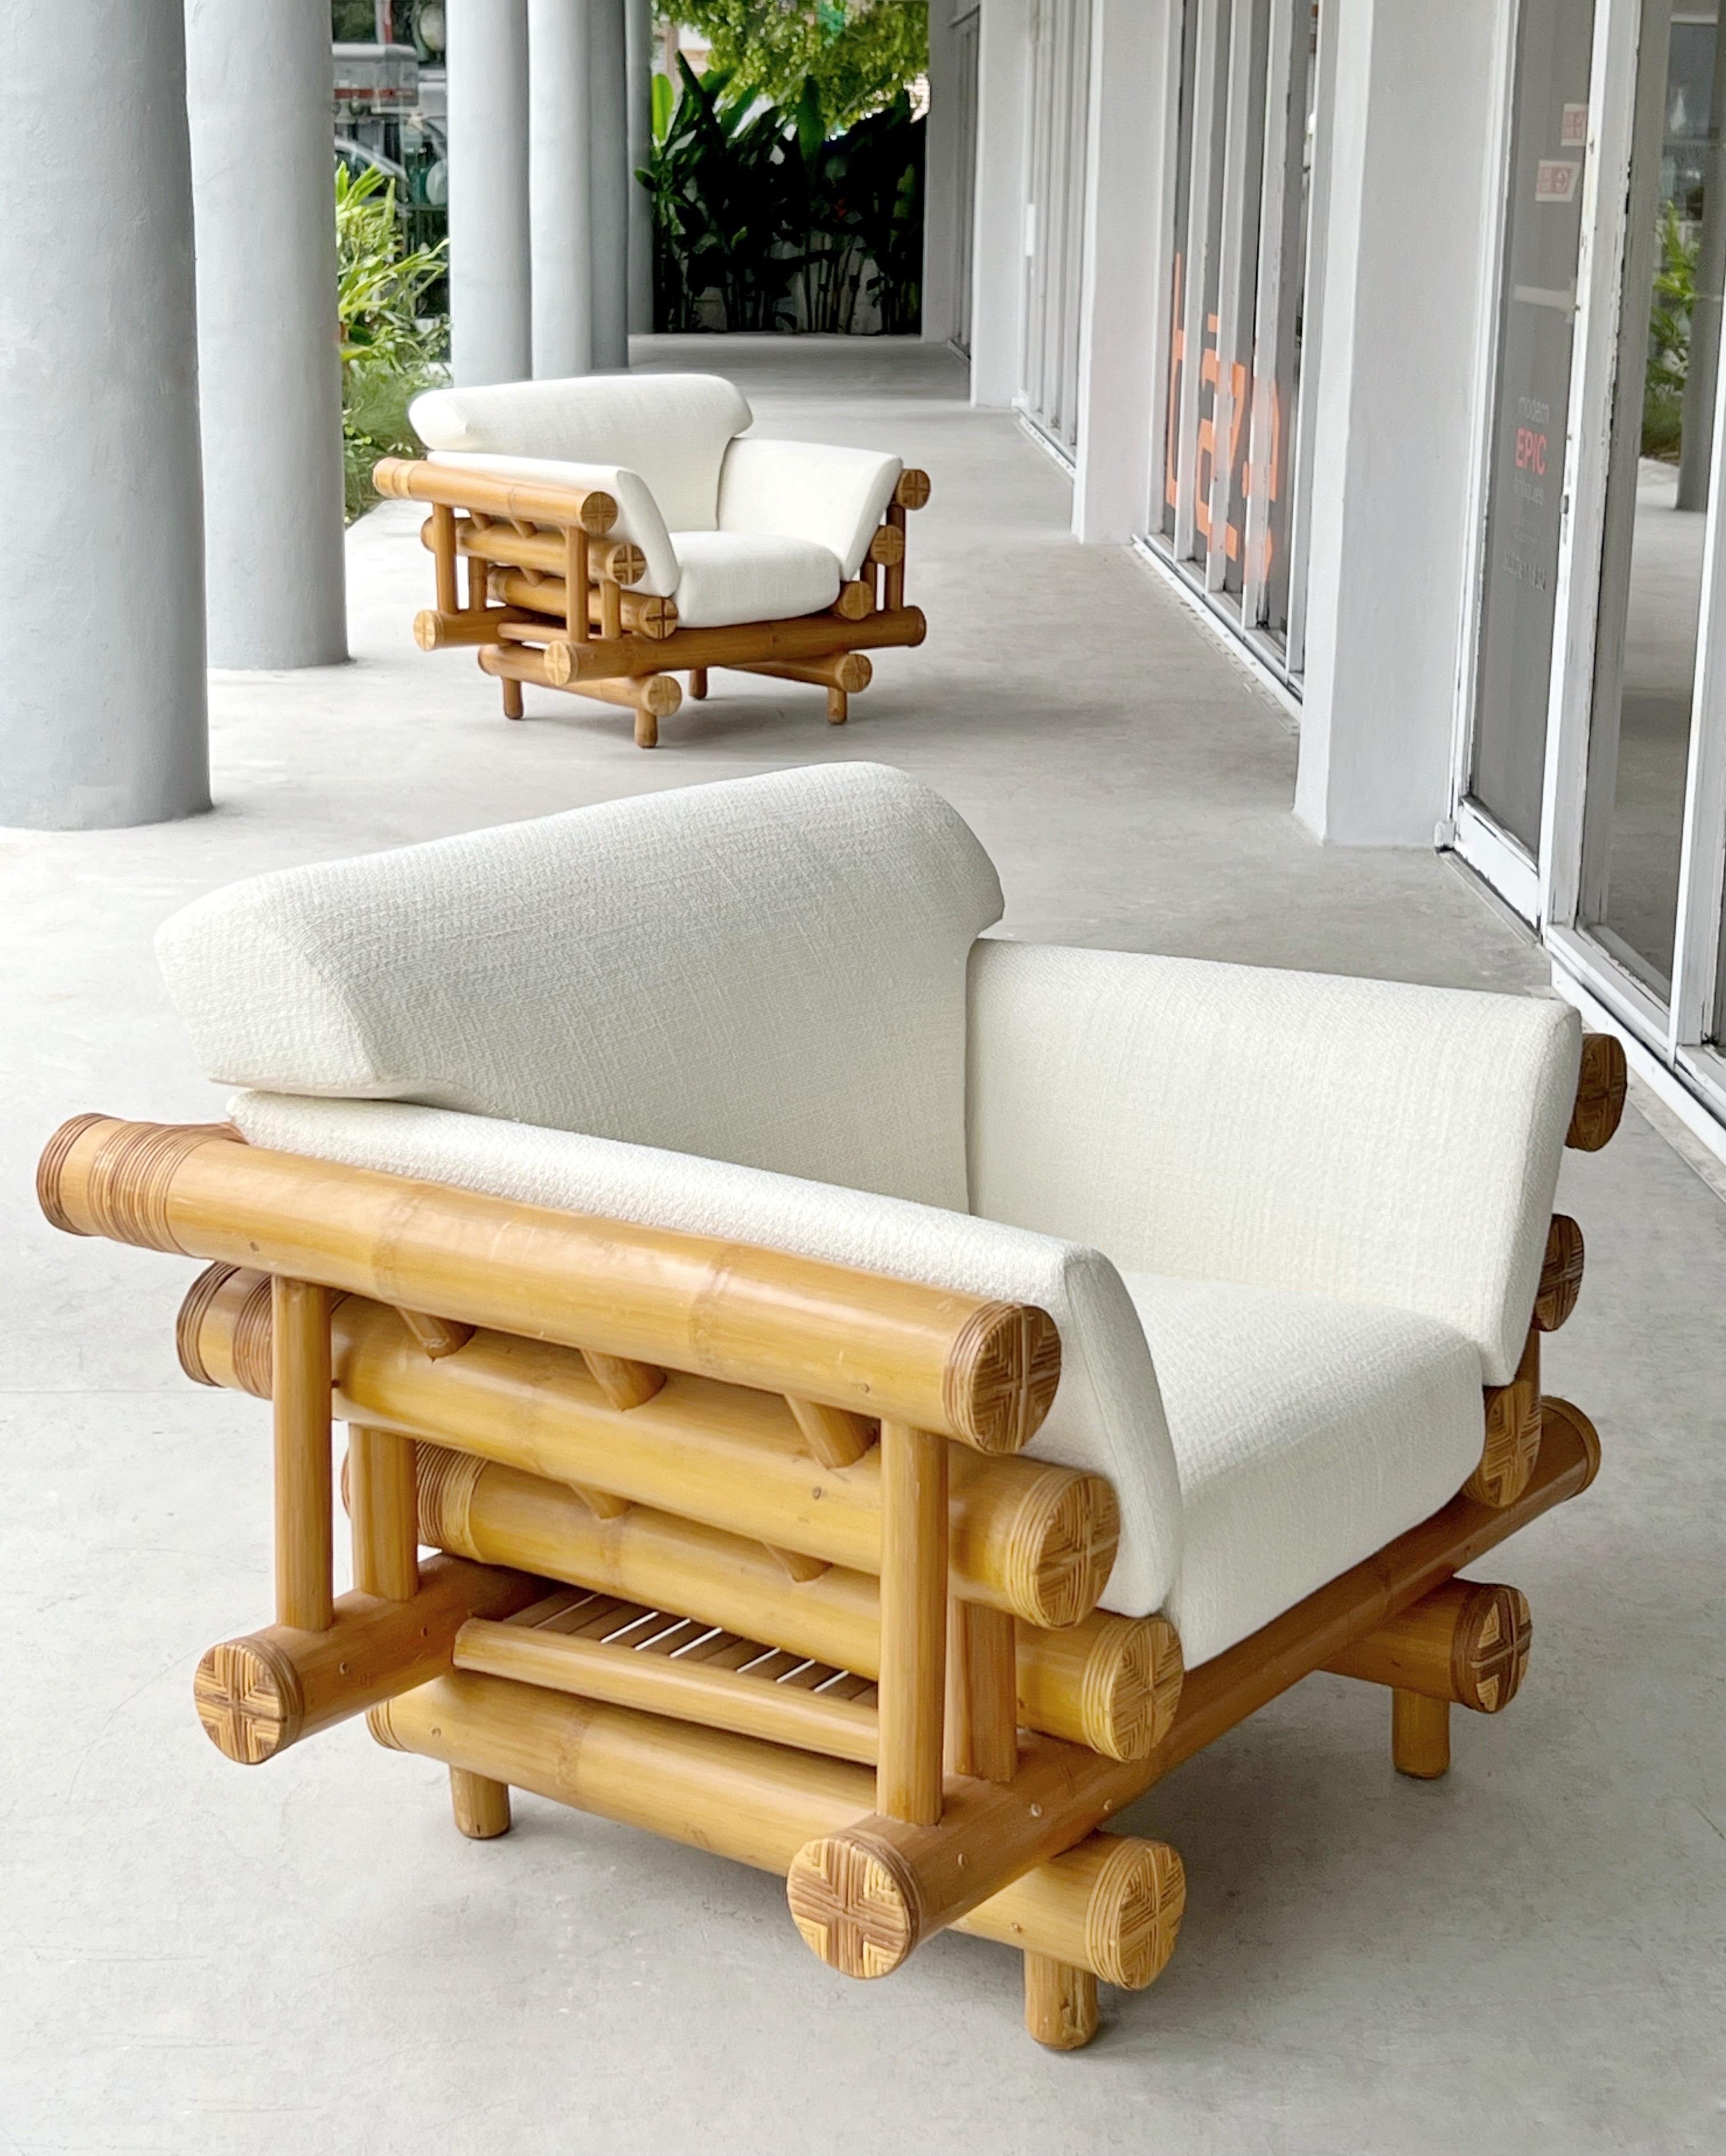 Paire de chaises longues en bambou des années 1970. Approche moderne d'un matériau noble et intemporel. Canapé également disponible.
